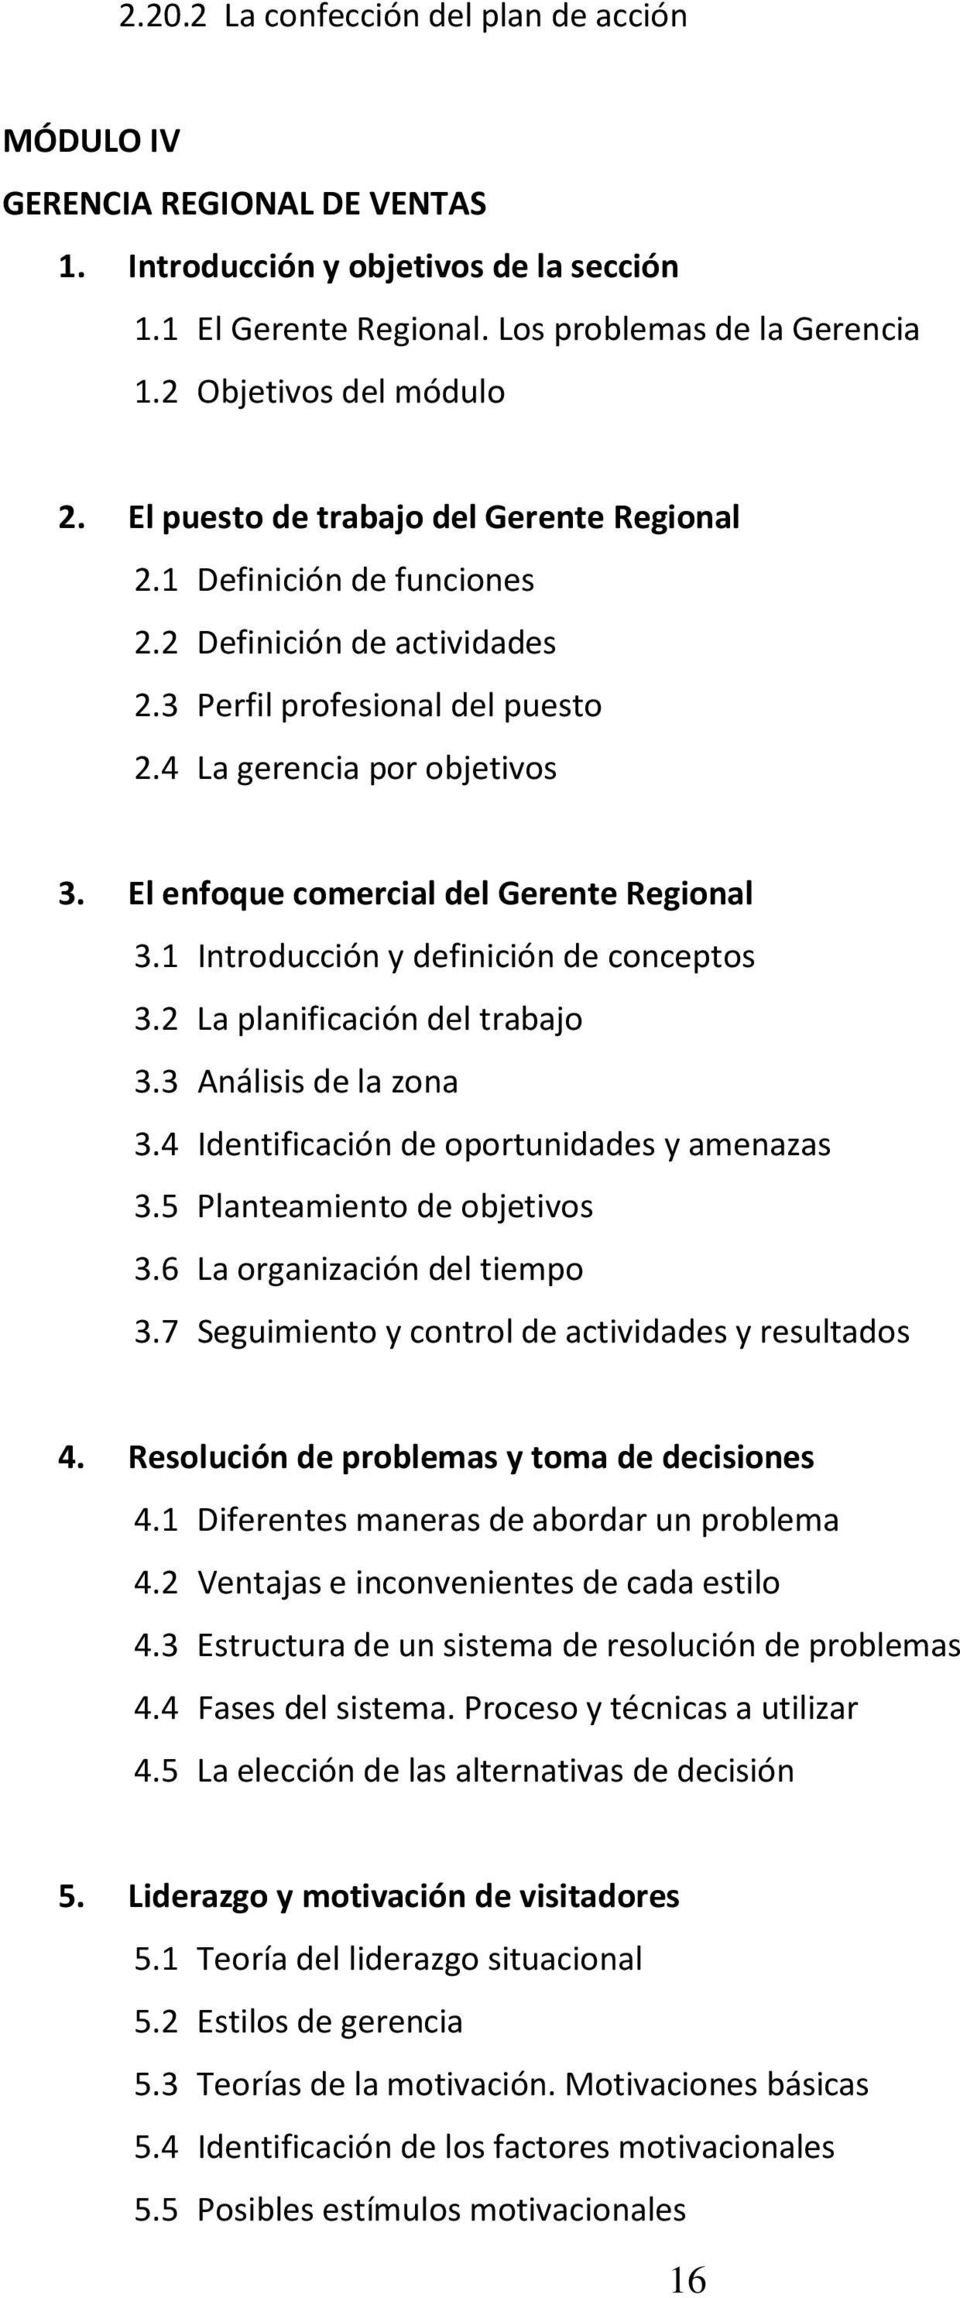 El enfoque comercial del Gerente Regional 3.1 Introducción y definición de conceptos 3.2 La planificación del trabajo 3.3 Análisis de la zona 3.4 Identificación de oportunidades y amenazas 3.